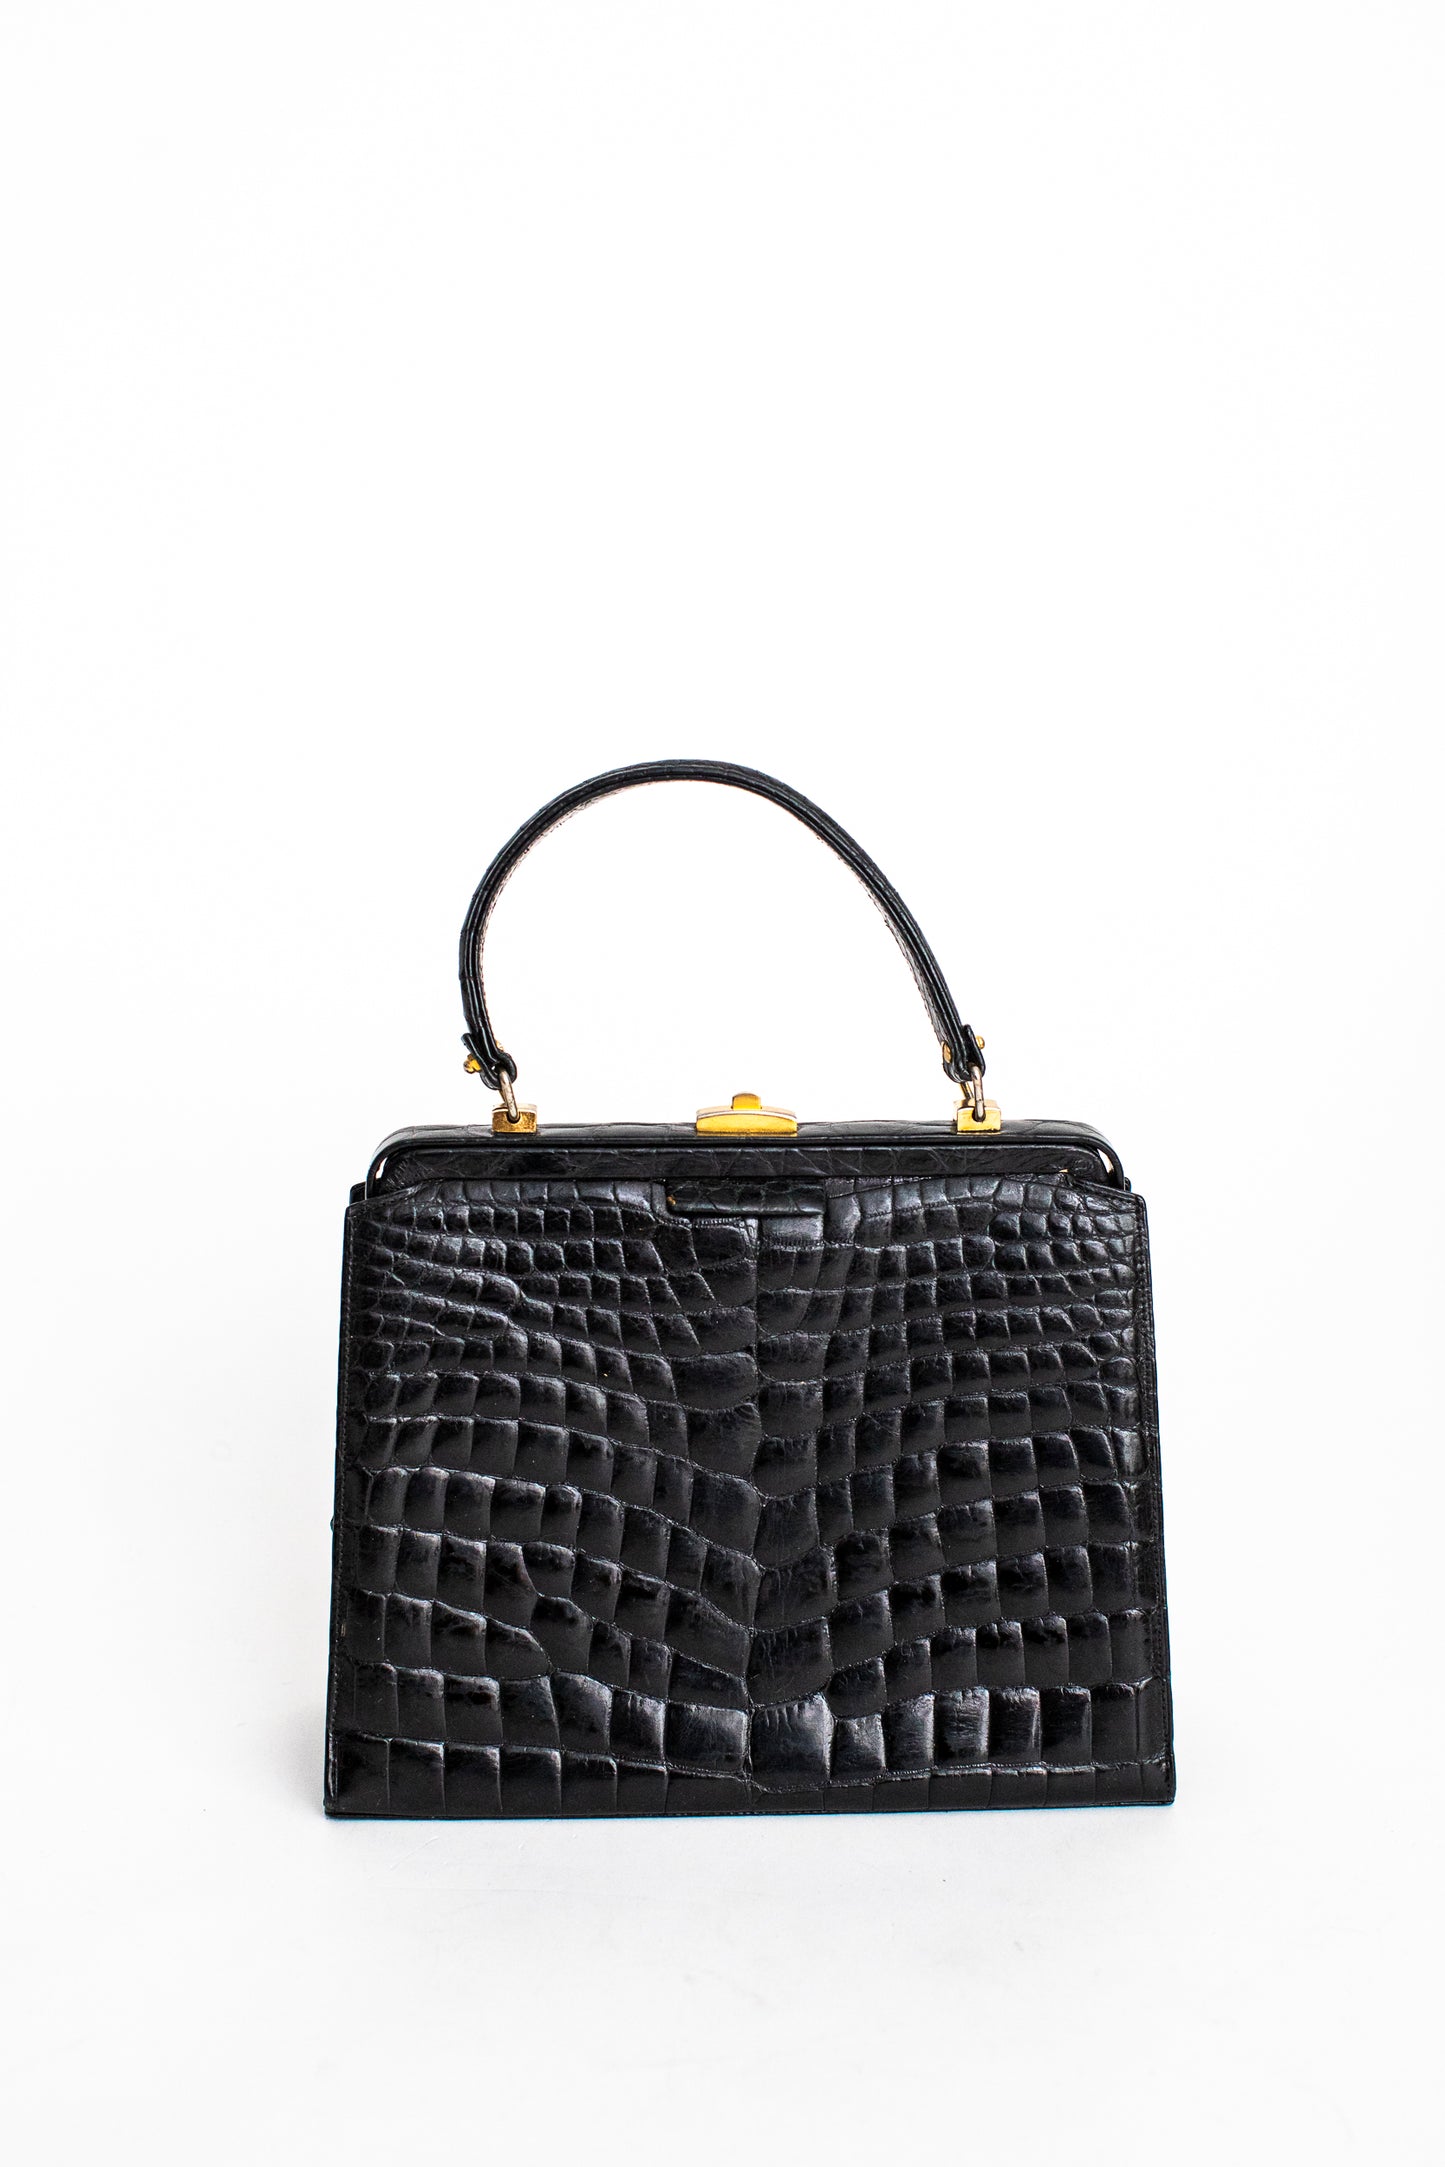 1970 Vintage Large Crocodile Leather Black Handbag